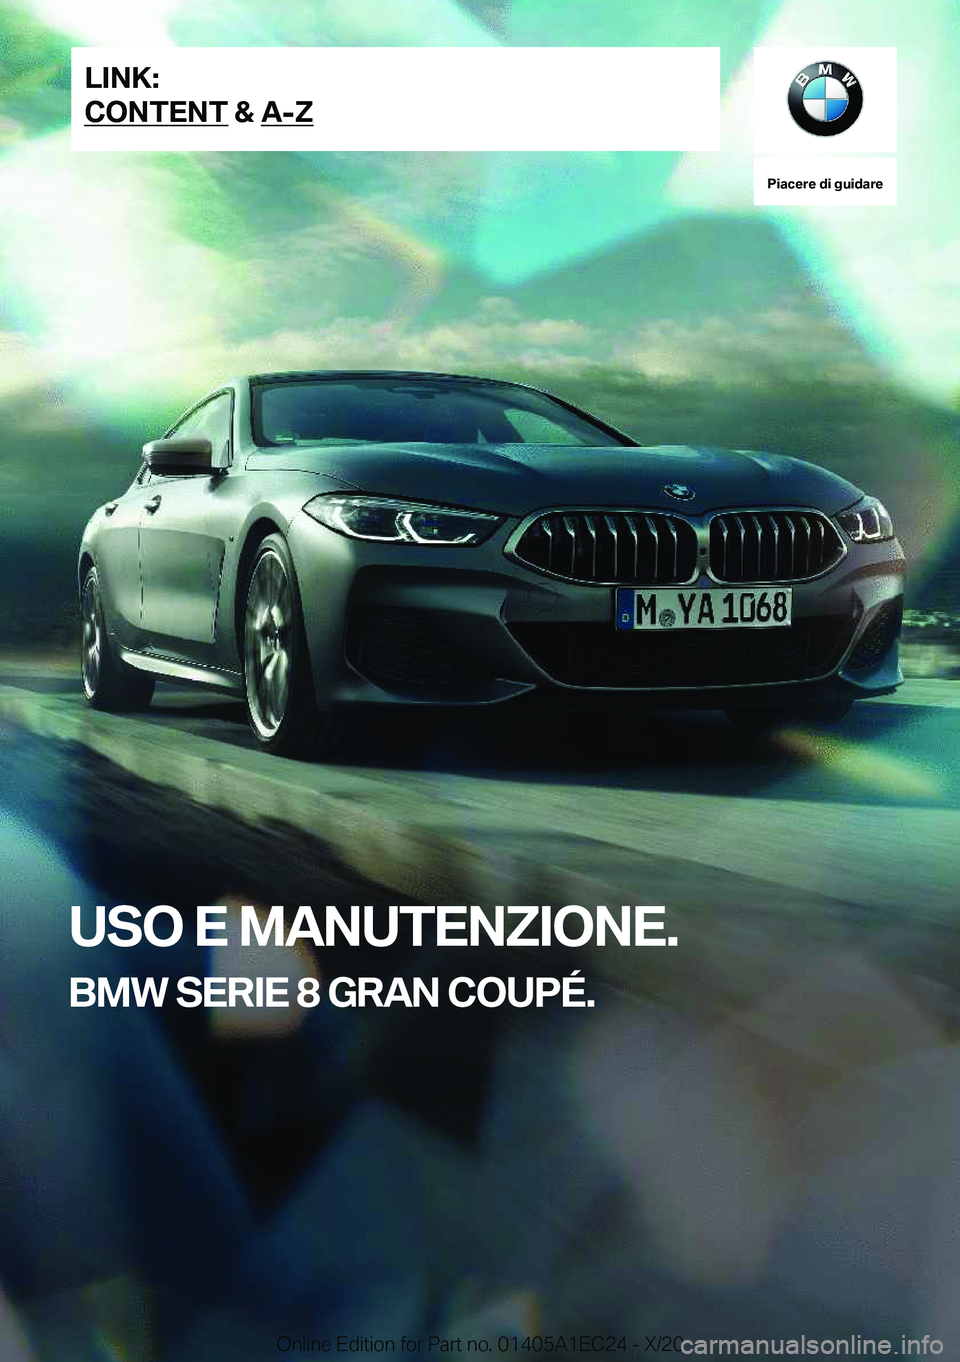 BMW 8 SERIES GRAN COUPE 2021  Libretti Di Uso E manutenzione (in Italian) �P�i�a�c�e�r�e��d�i��g�u�i�d�a�r�e
�U�S�O��E��M�A�N�U�T�E�N�Z�I�O�N�E�.
�B�M�W��S�E�R�I�E��8��G�R�A�N��C�O�U�P�